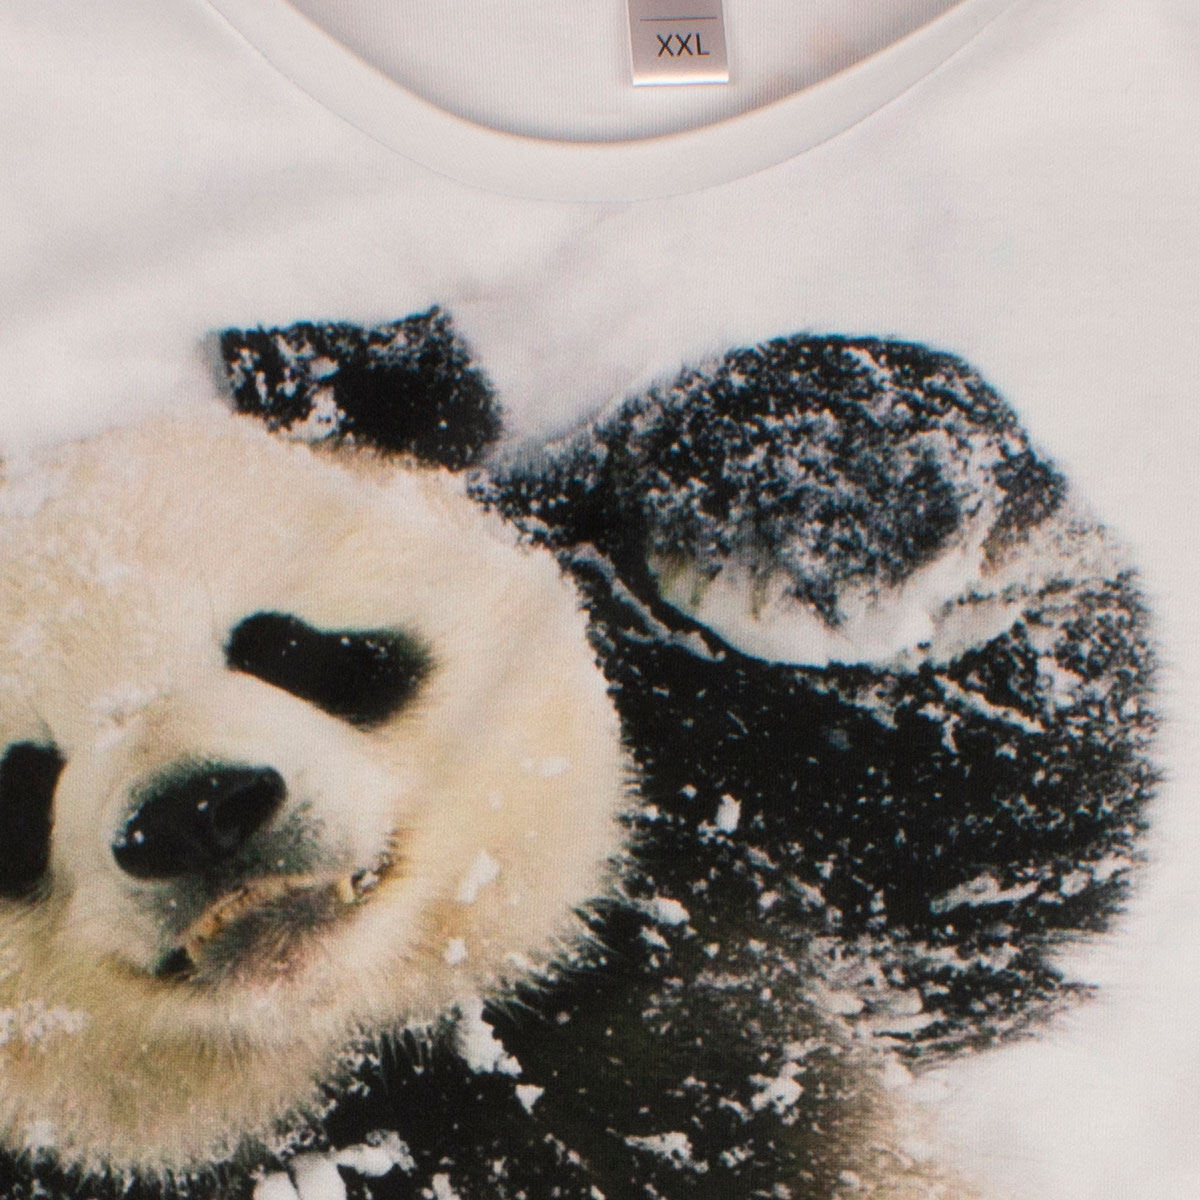 3D футболка с пандой в снегу